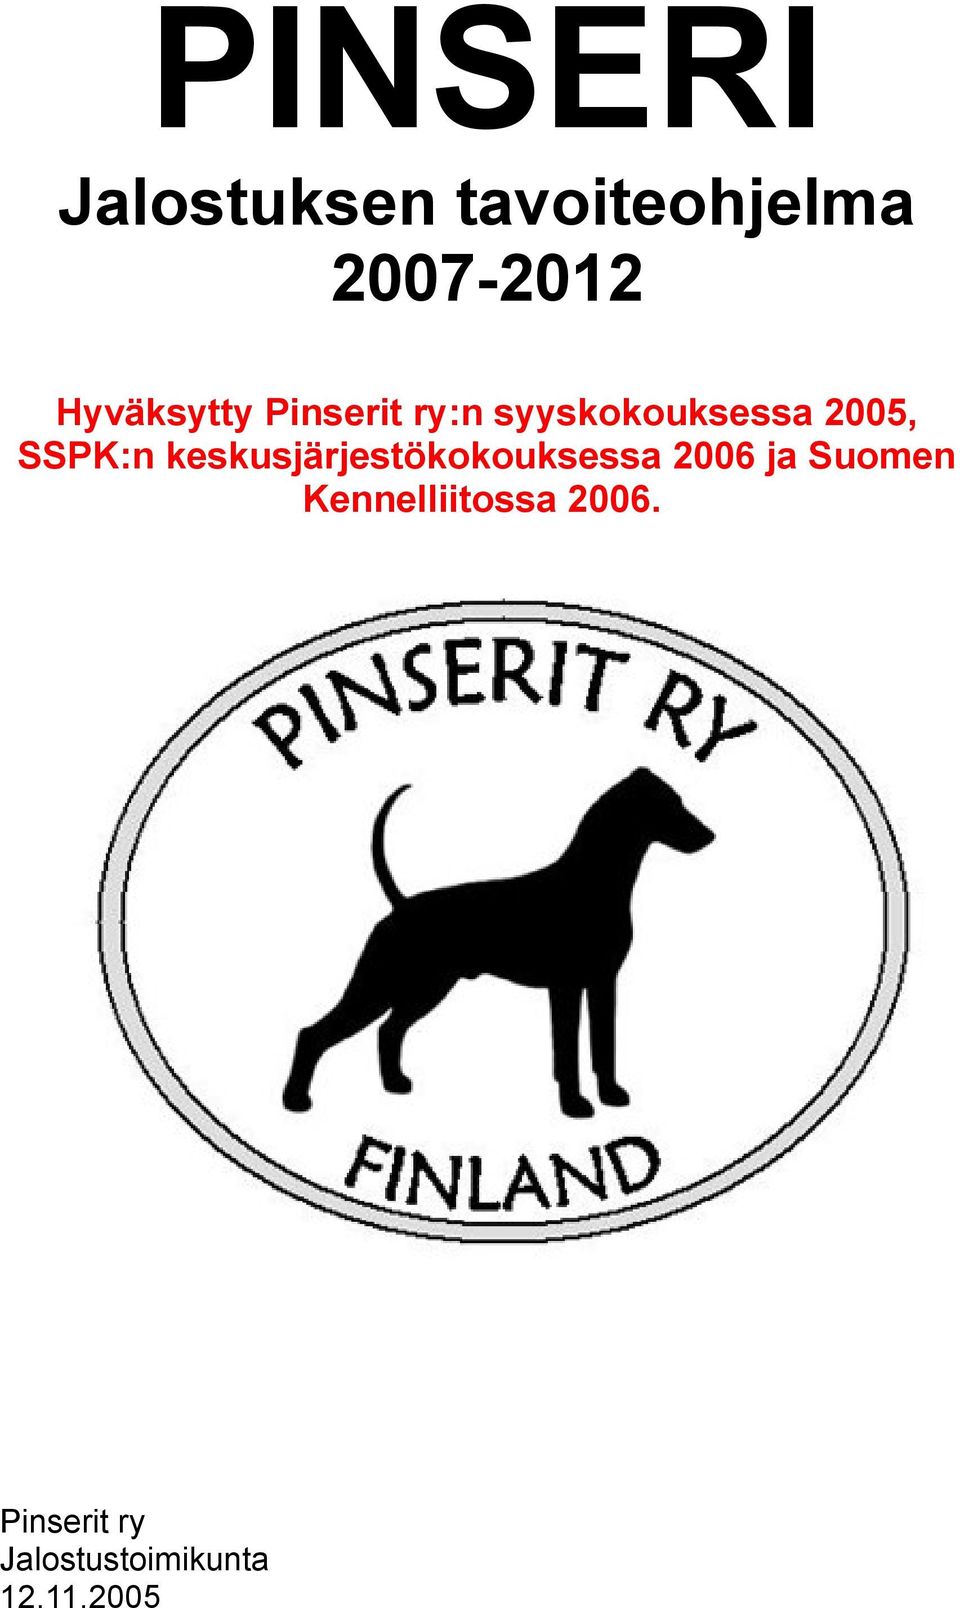 SSPK:n keskusjärjestökokouksessa 2006 ja Suomen